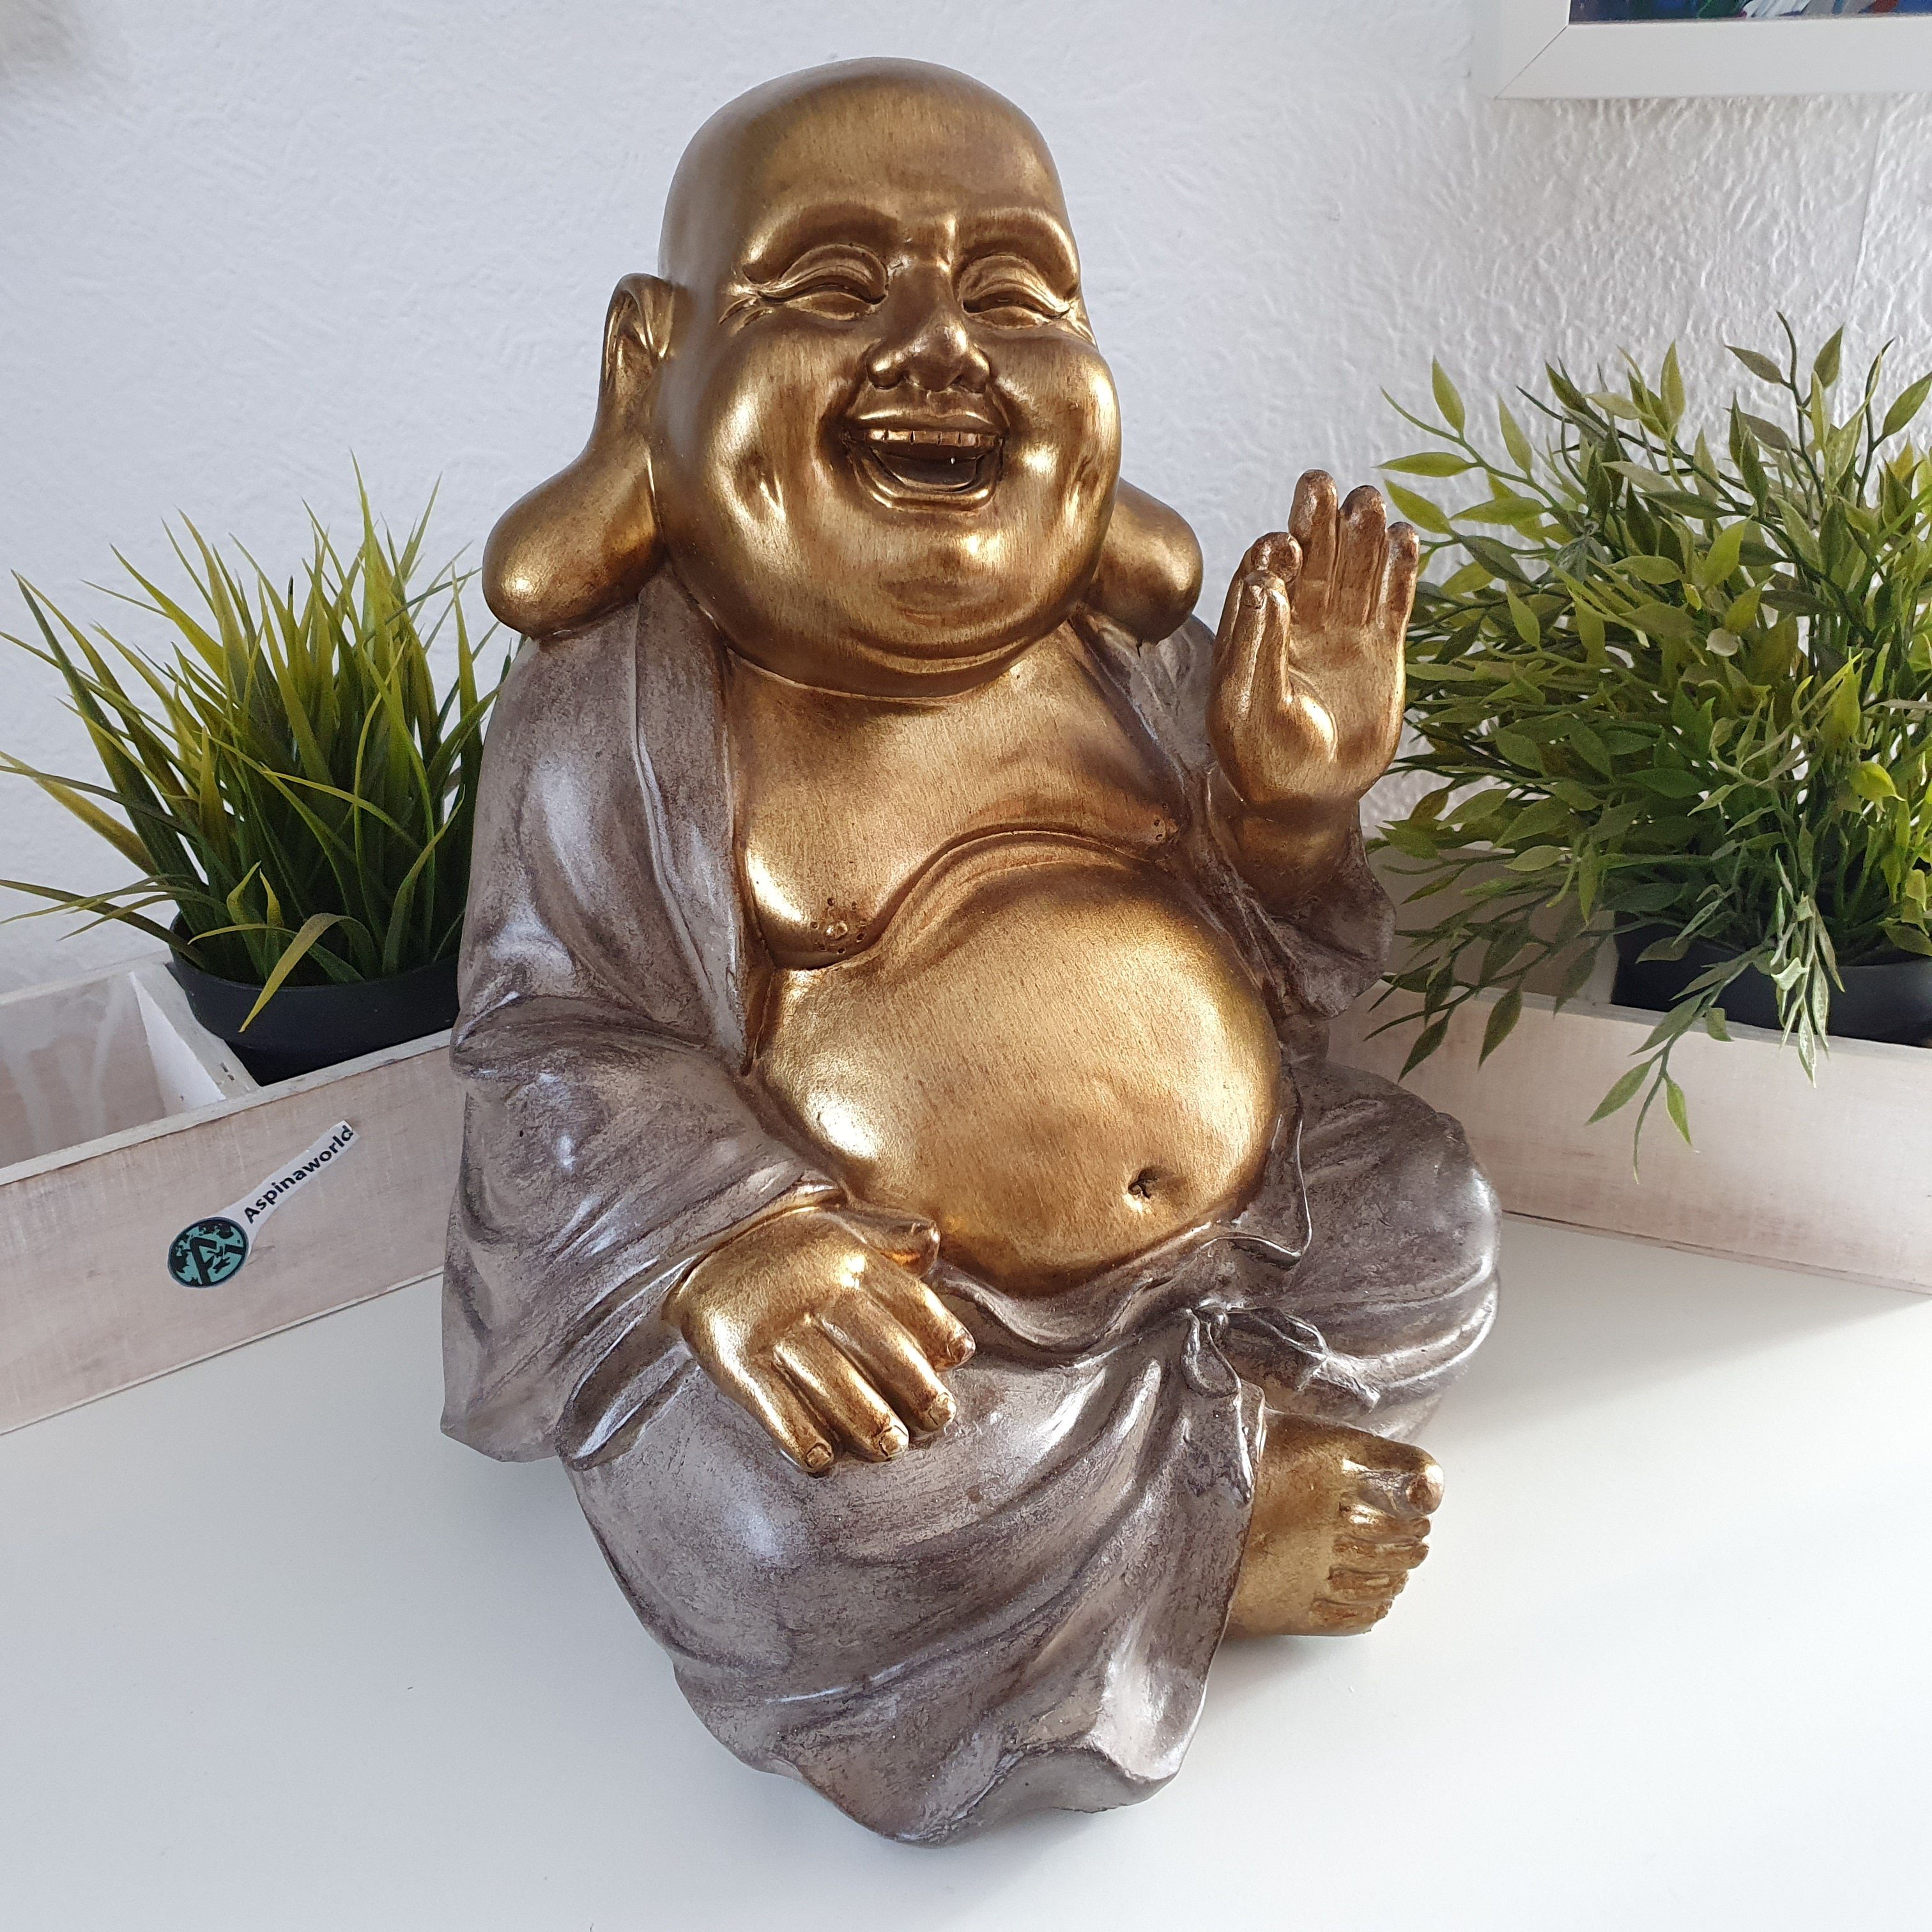 Aspinaworld Dekofigur Große sitzende Buddha Figur mit dickem Bauch gold 30 cm